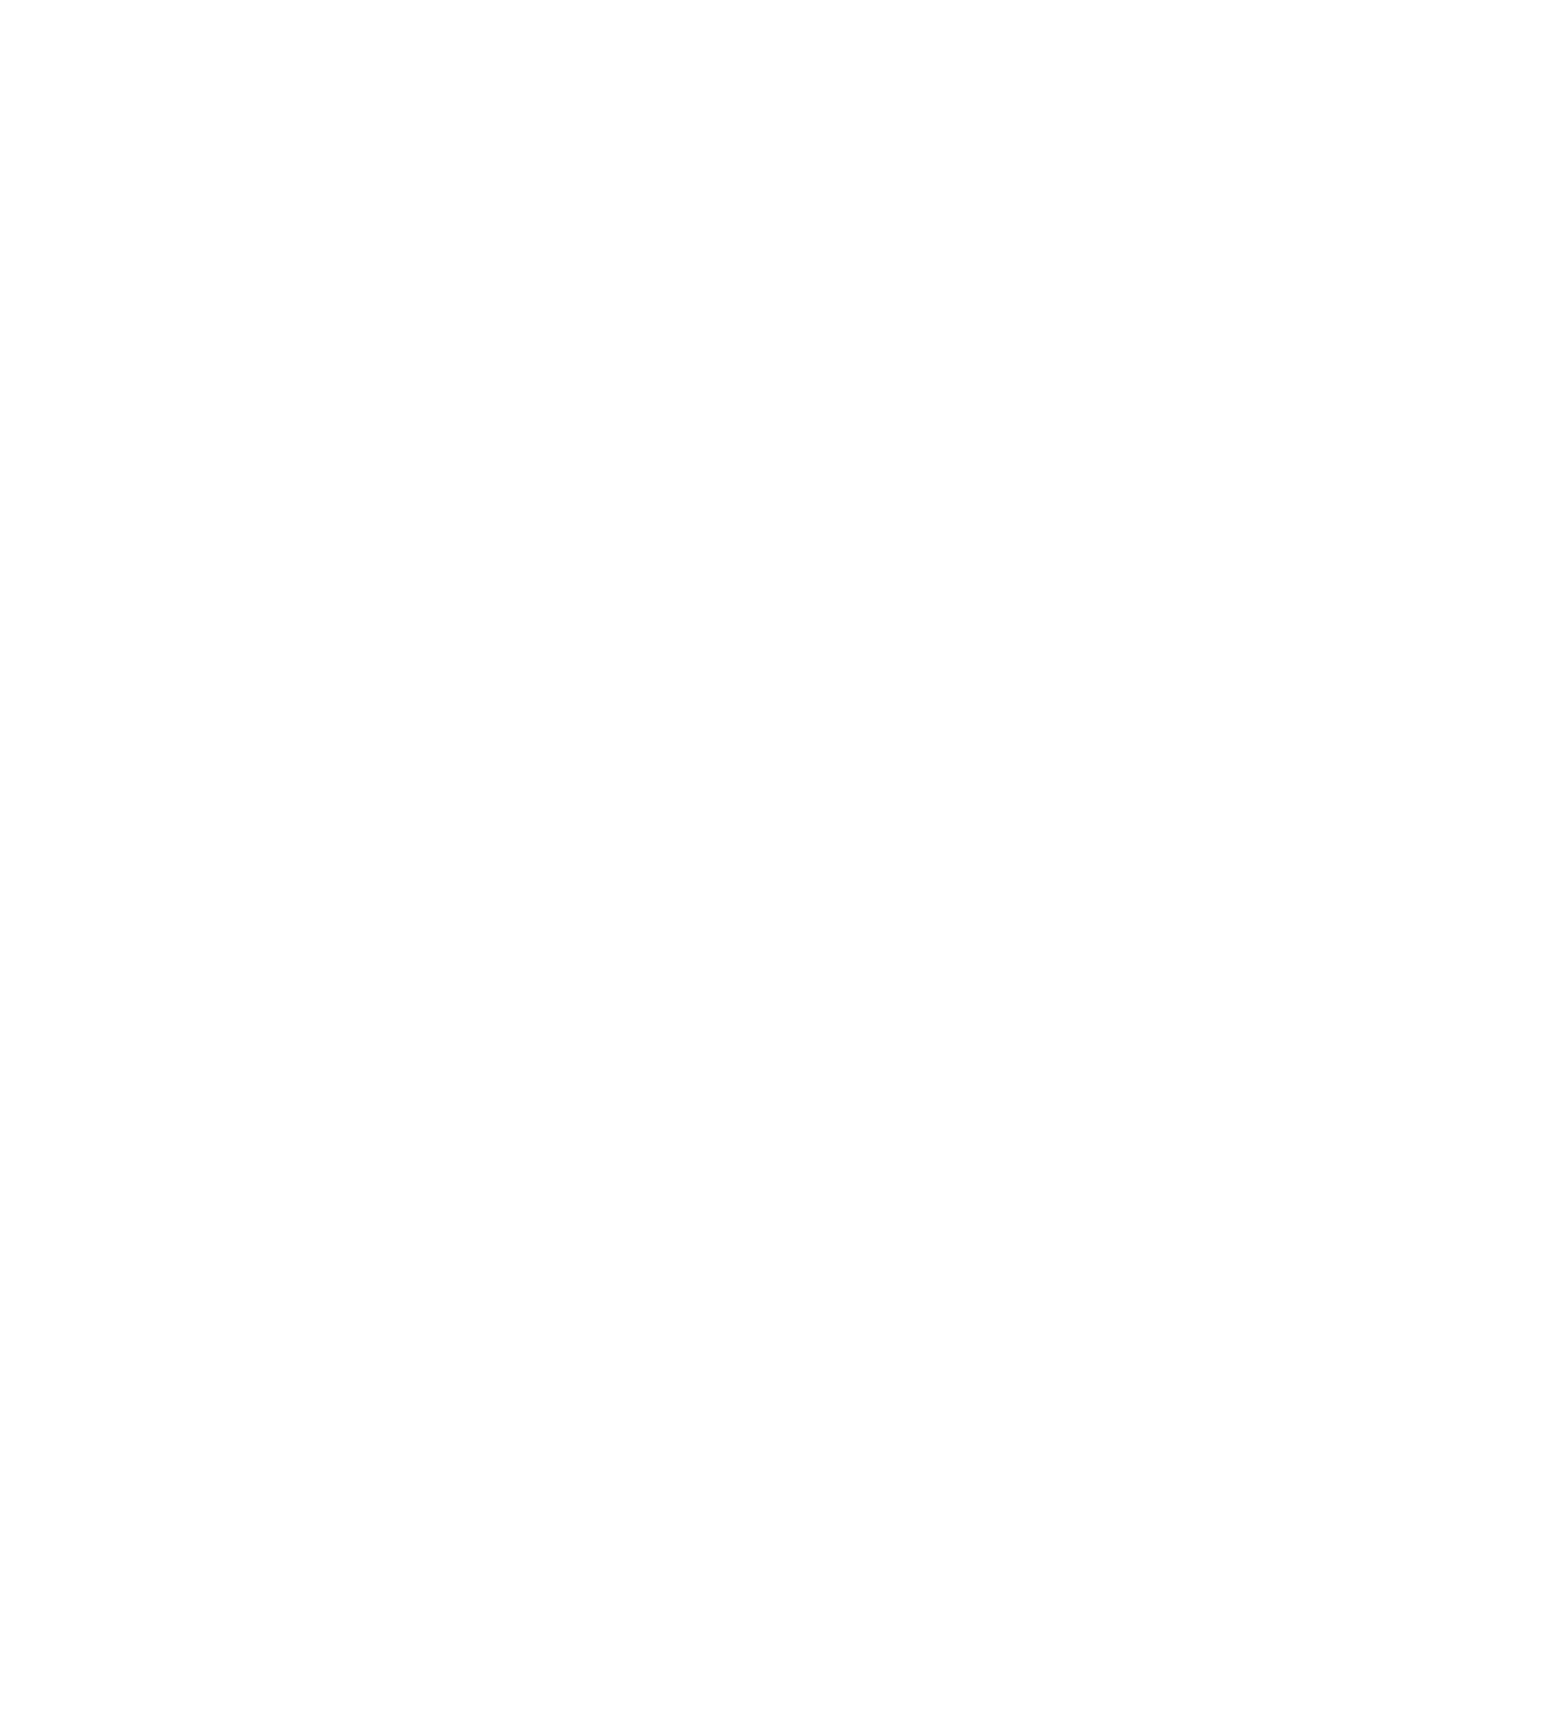 Clym Logo